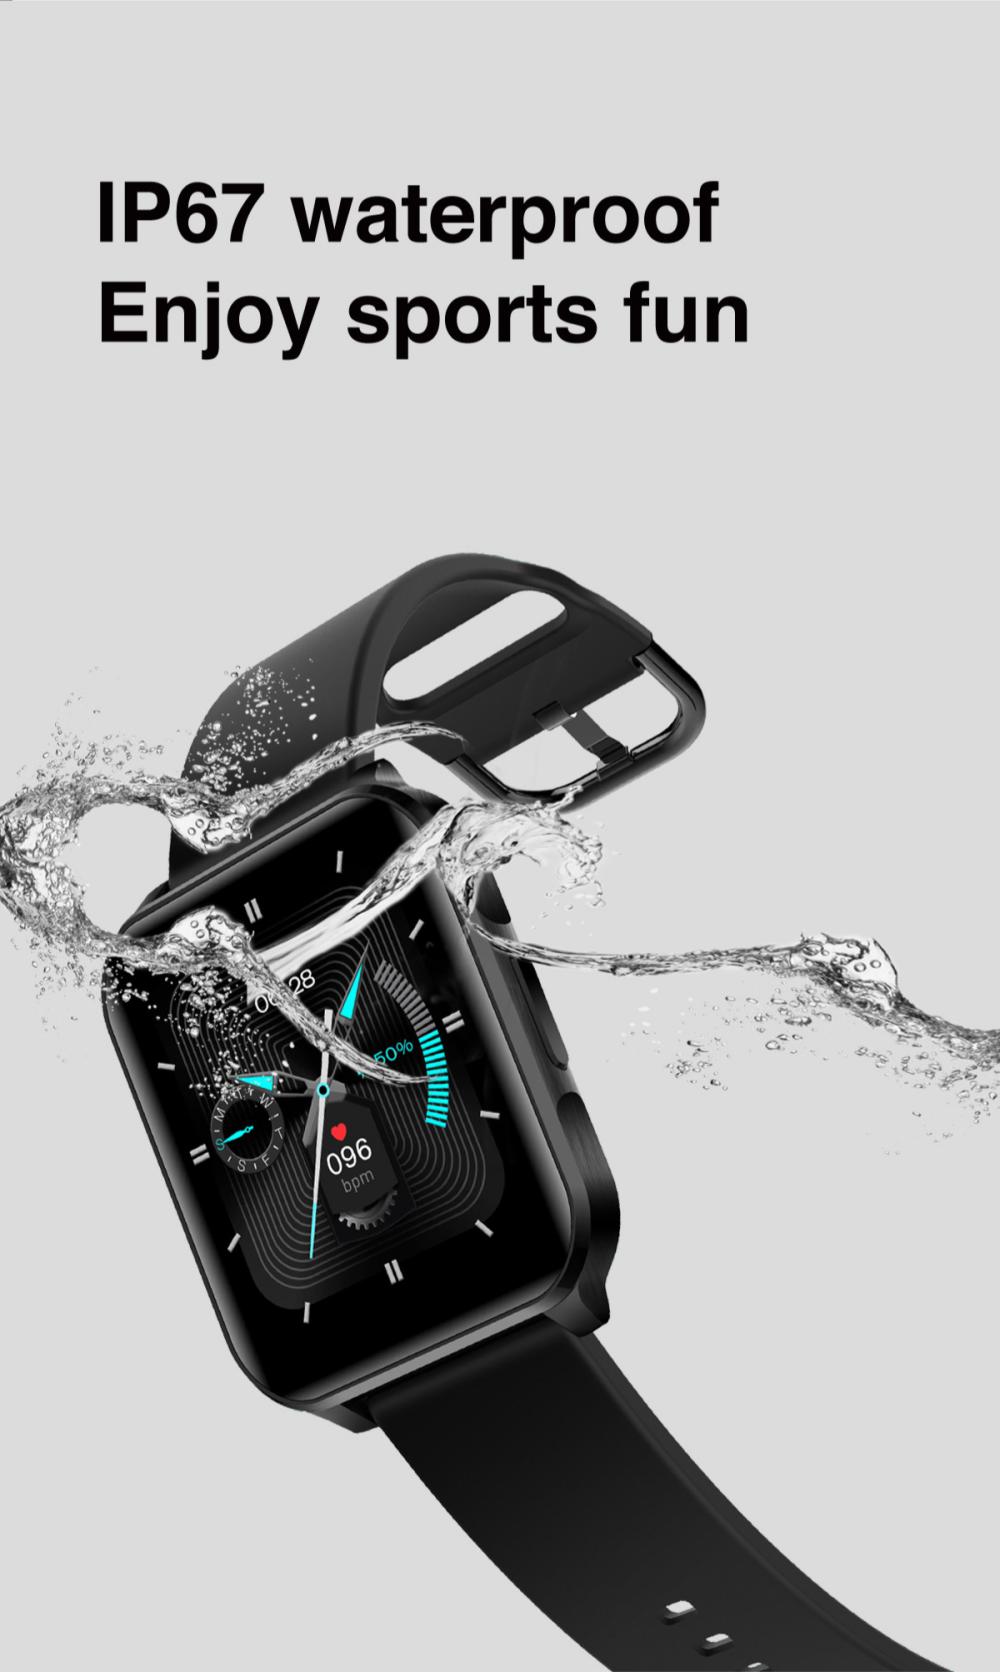 lenovo s2 pro smart watch ip67 waterproof ips full screen 4